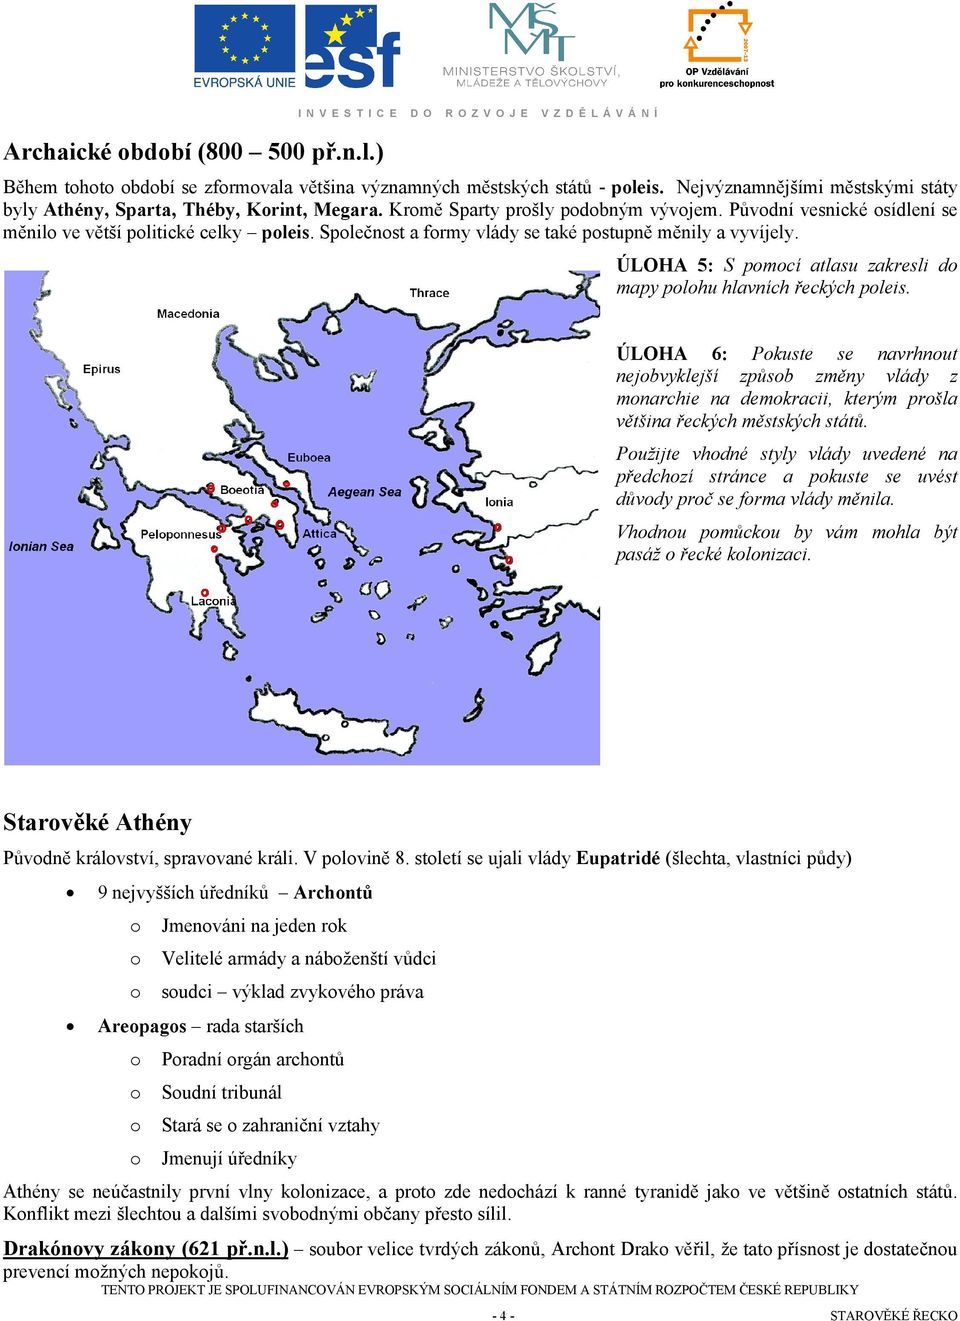 ÚLOHA 5: S pmcí atlasu zakresli d mapy plhu hlavních řeckých pleis. ÚLOHA 6: Pkuste se navrhnut nejbvyklejší způsb změny vlády z mnarchie na demkracii, kterým pršla většina řeckých městských států.